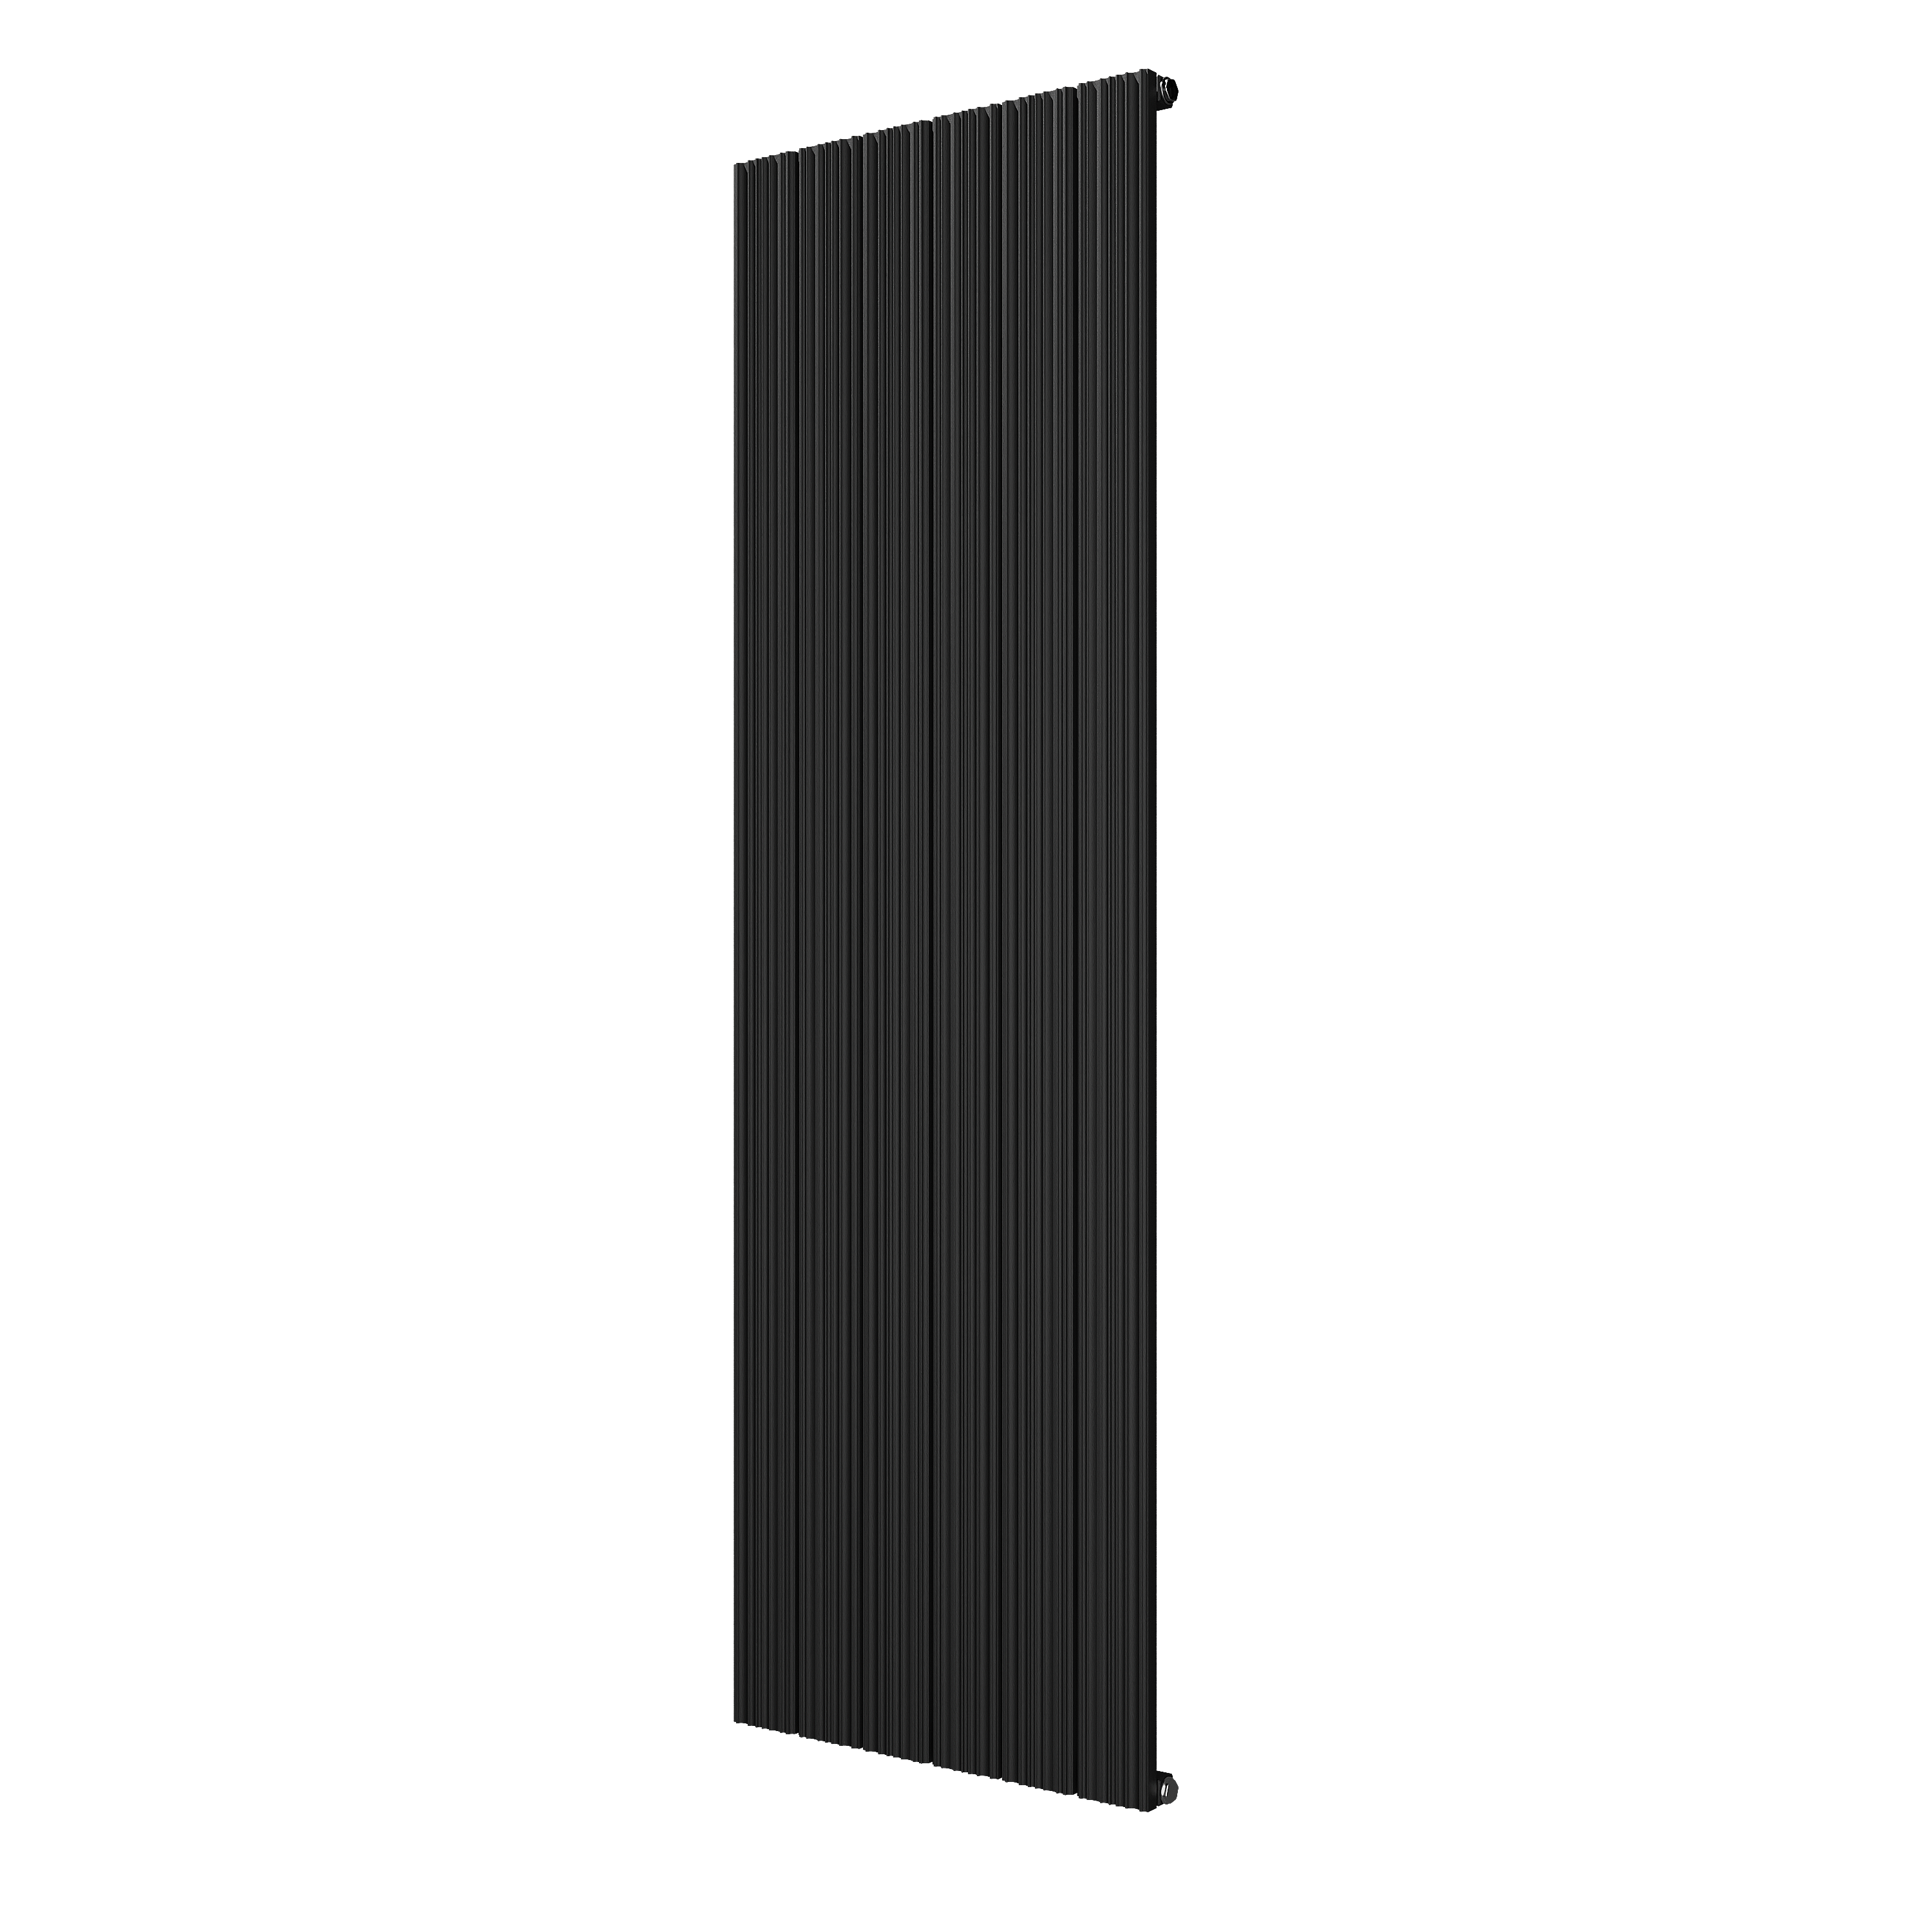 VIPERA Mares enkele handdoekradiator 56,5 x 180 cm centrale verwarming mat zwart zij- en middenaansluiting 1,313W